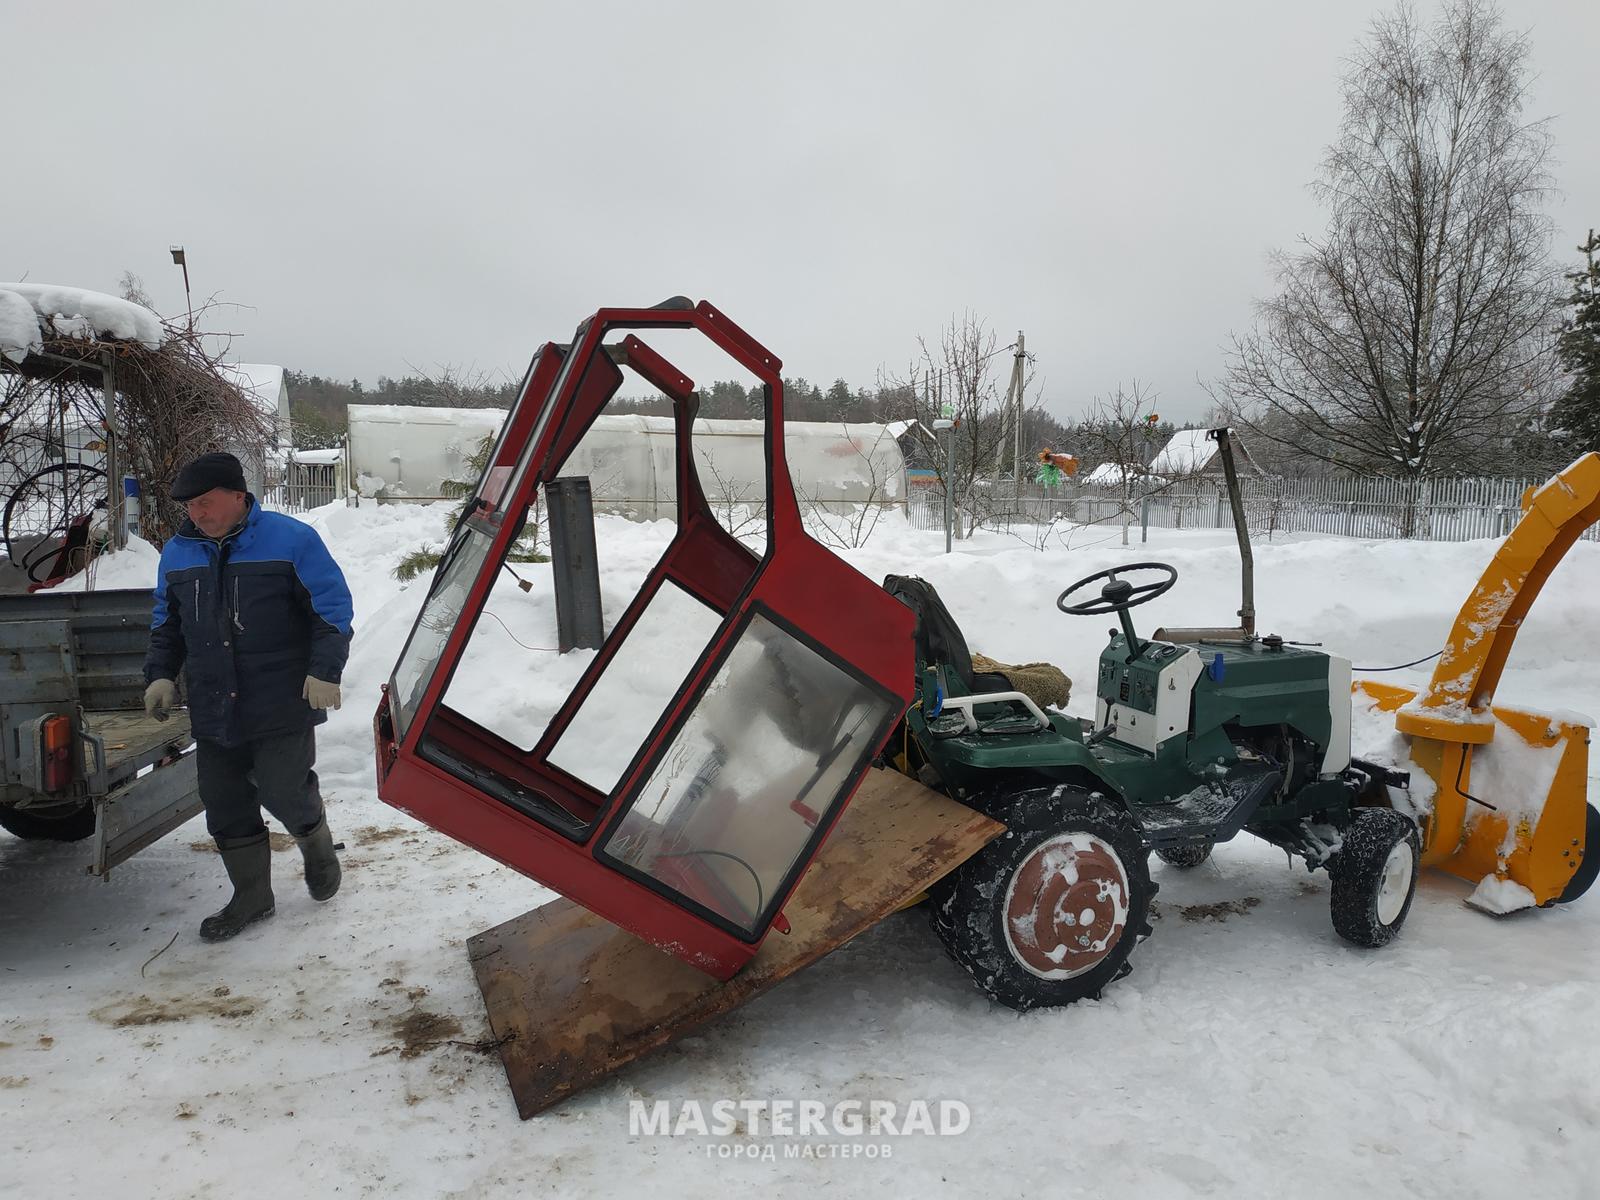 Мини-трактор кмз-012